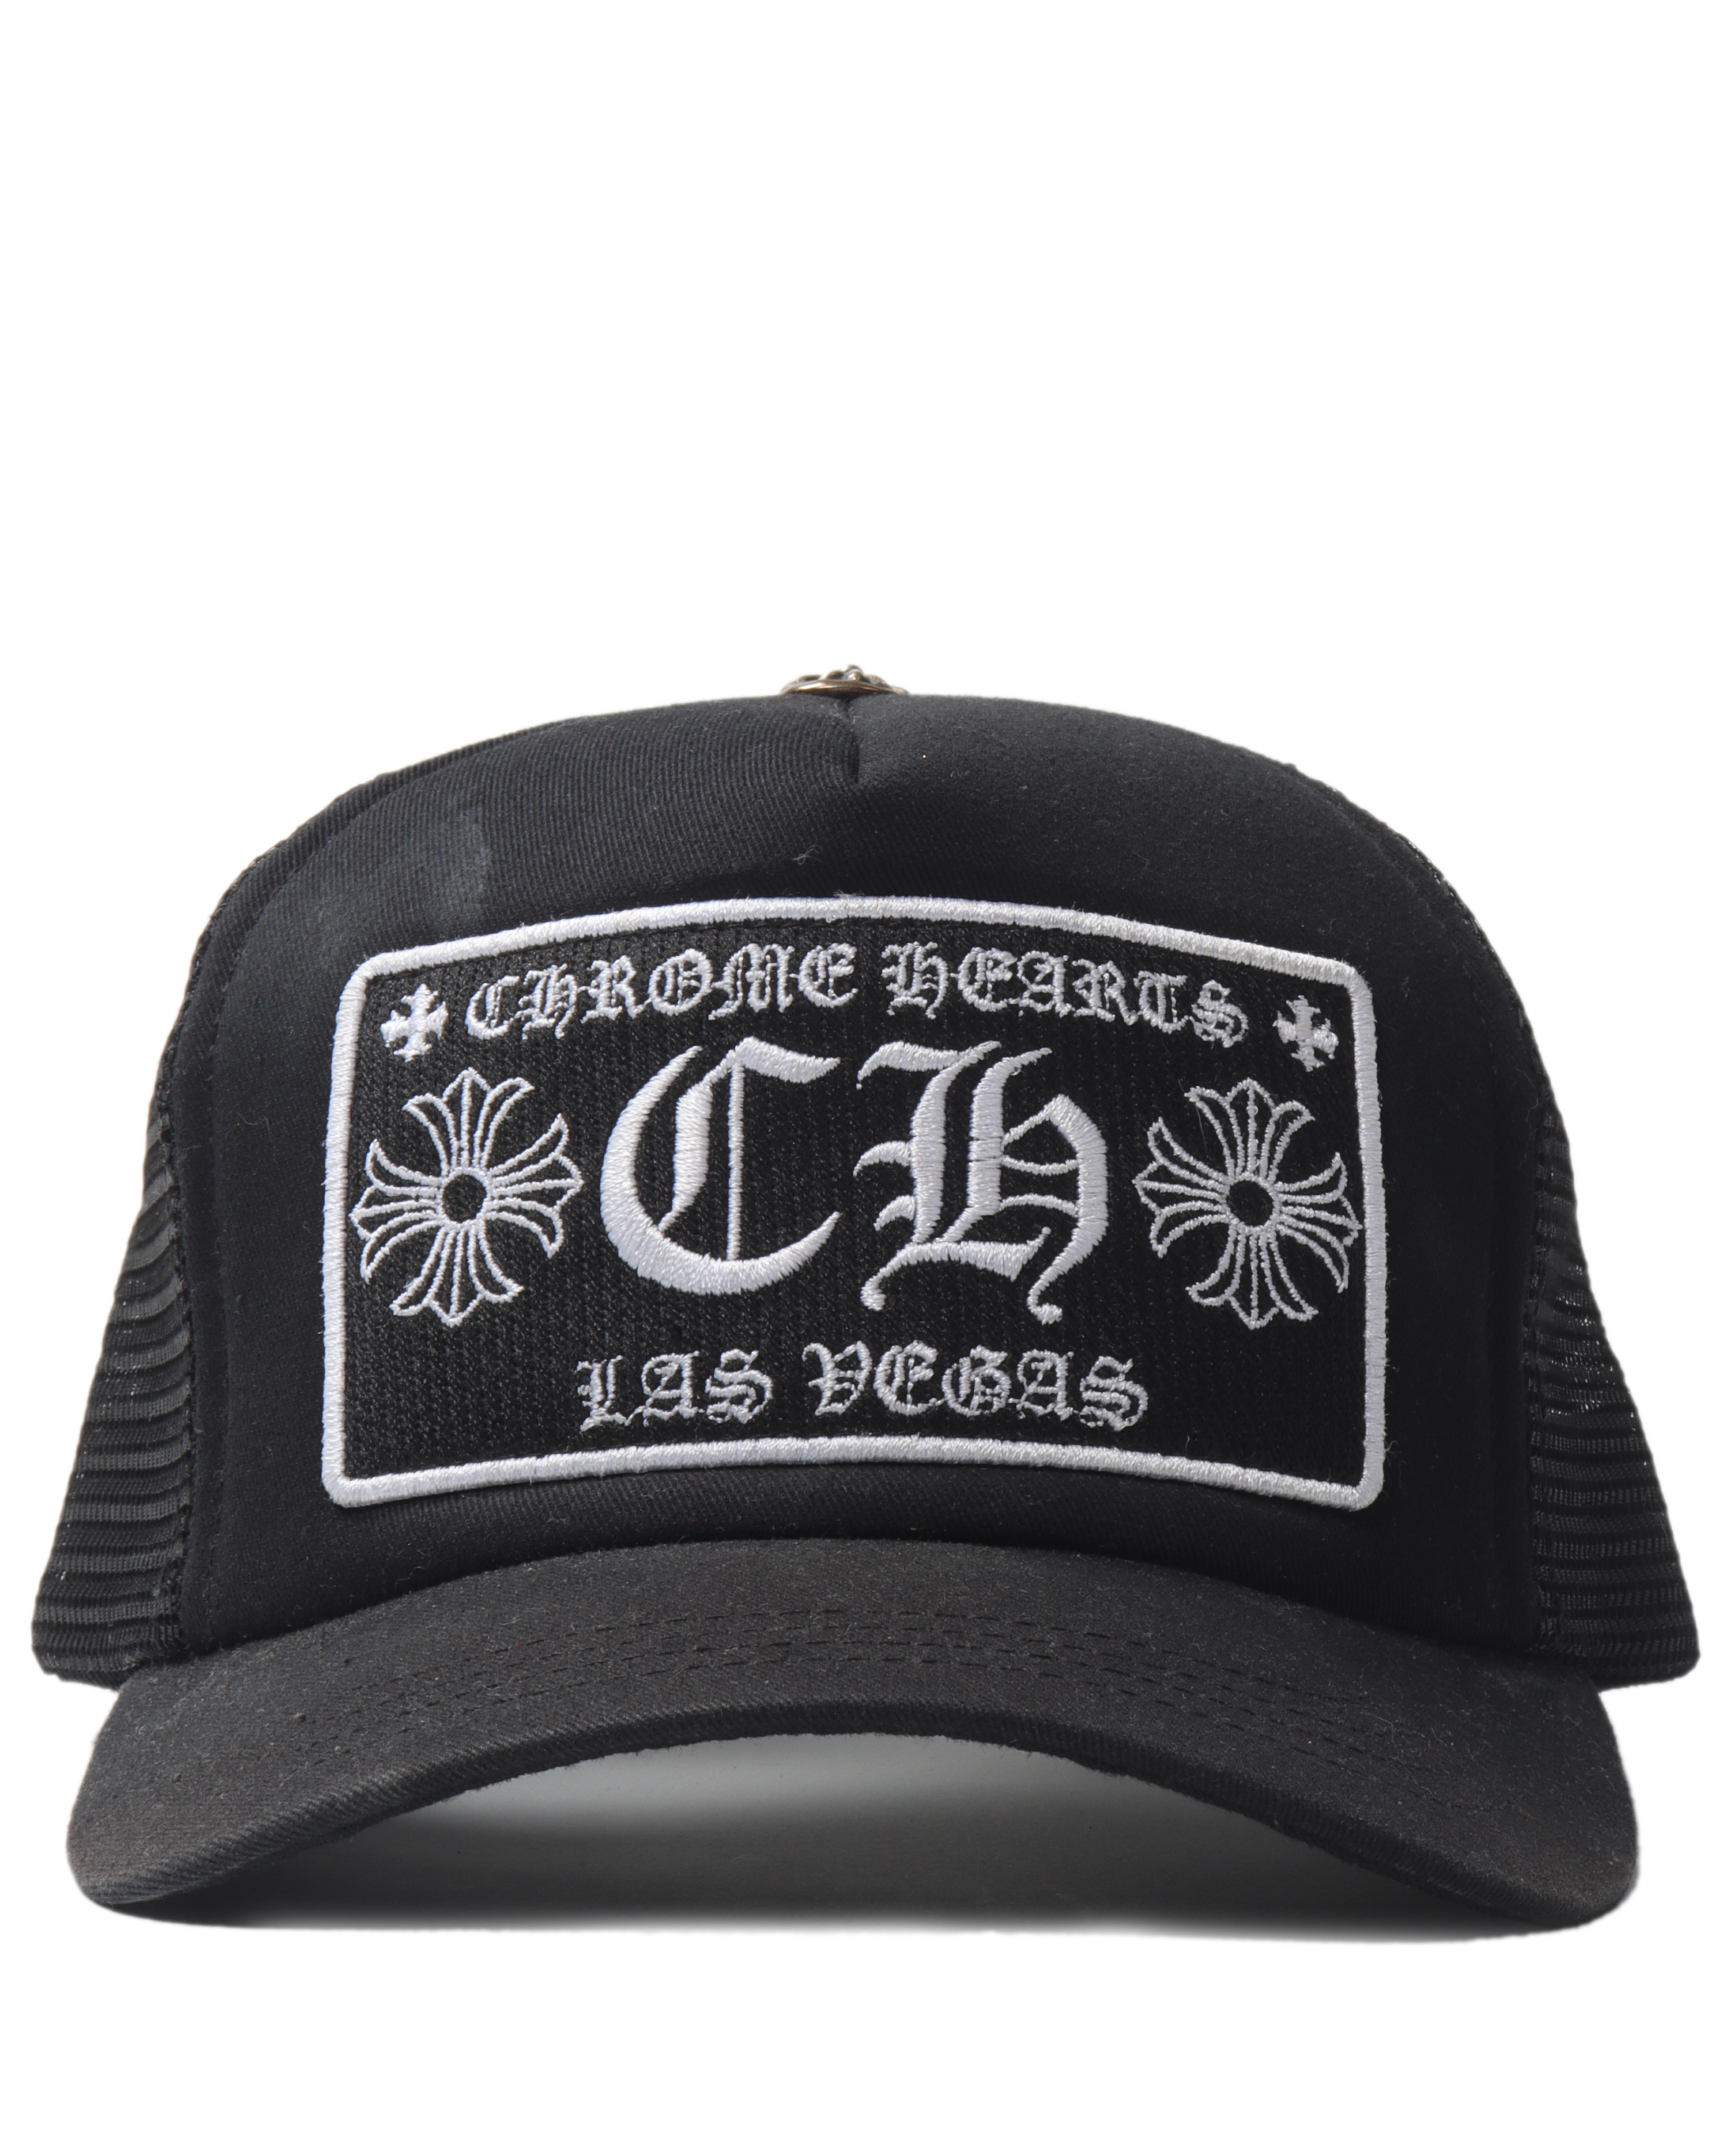 Las Vegas Black on Black Hat